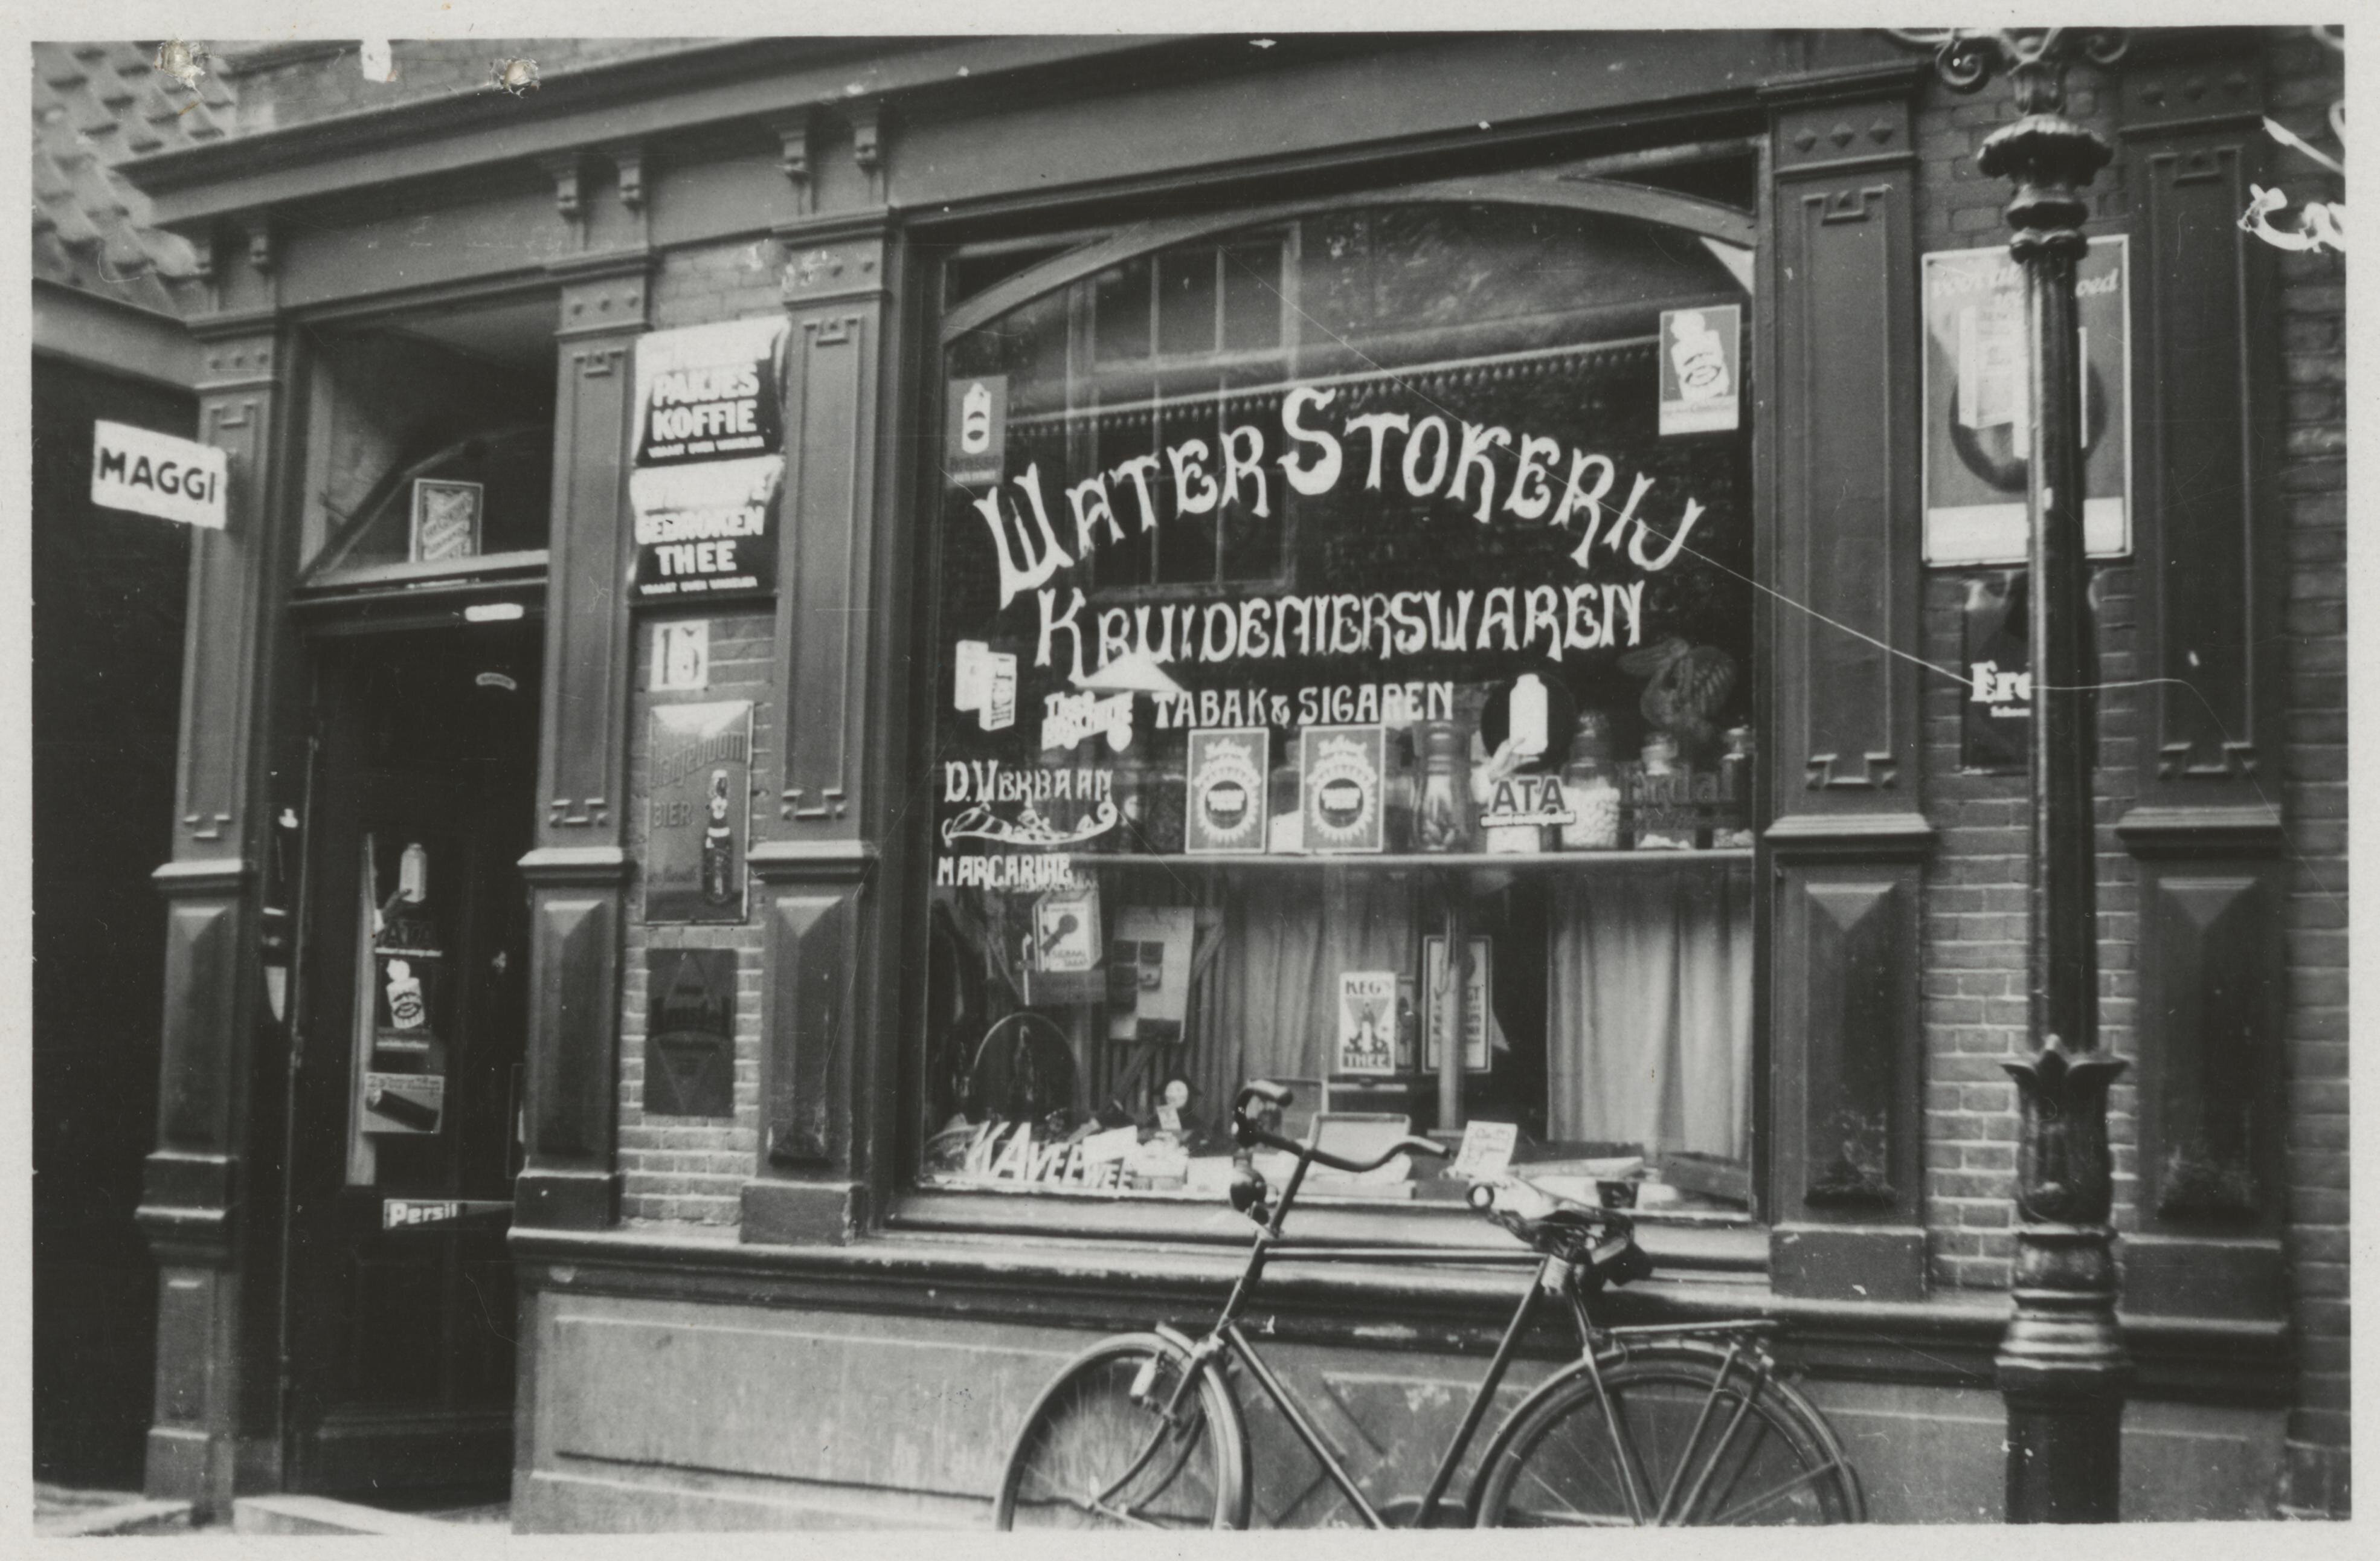 Werfstraat 15 winkel in kruidenierswaren annex waterstokerij van D. Verbaan, maker onbekend, 1934